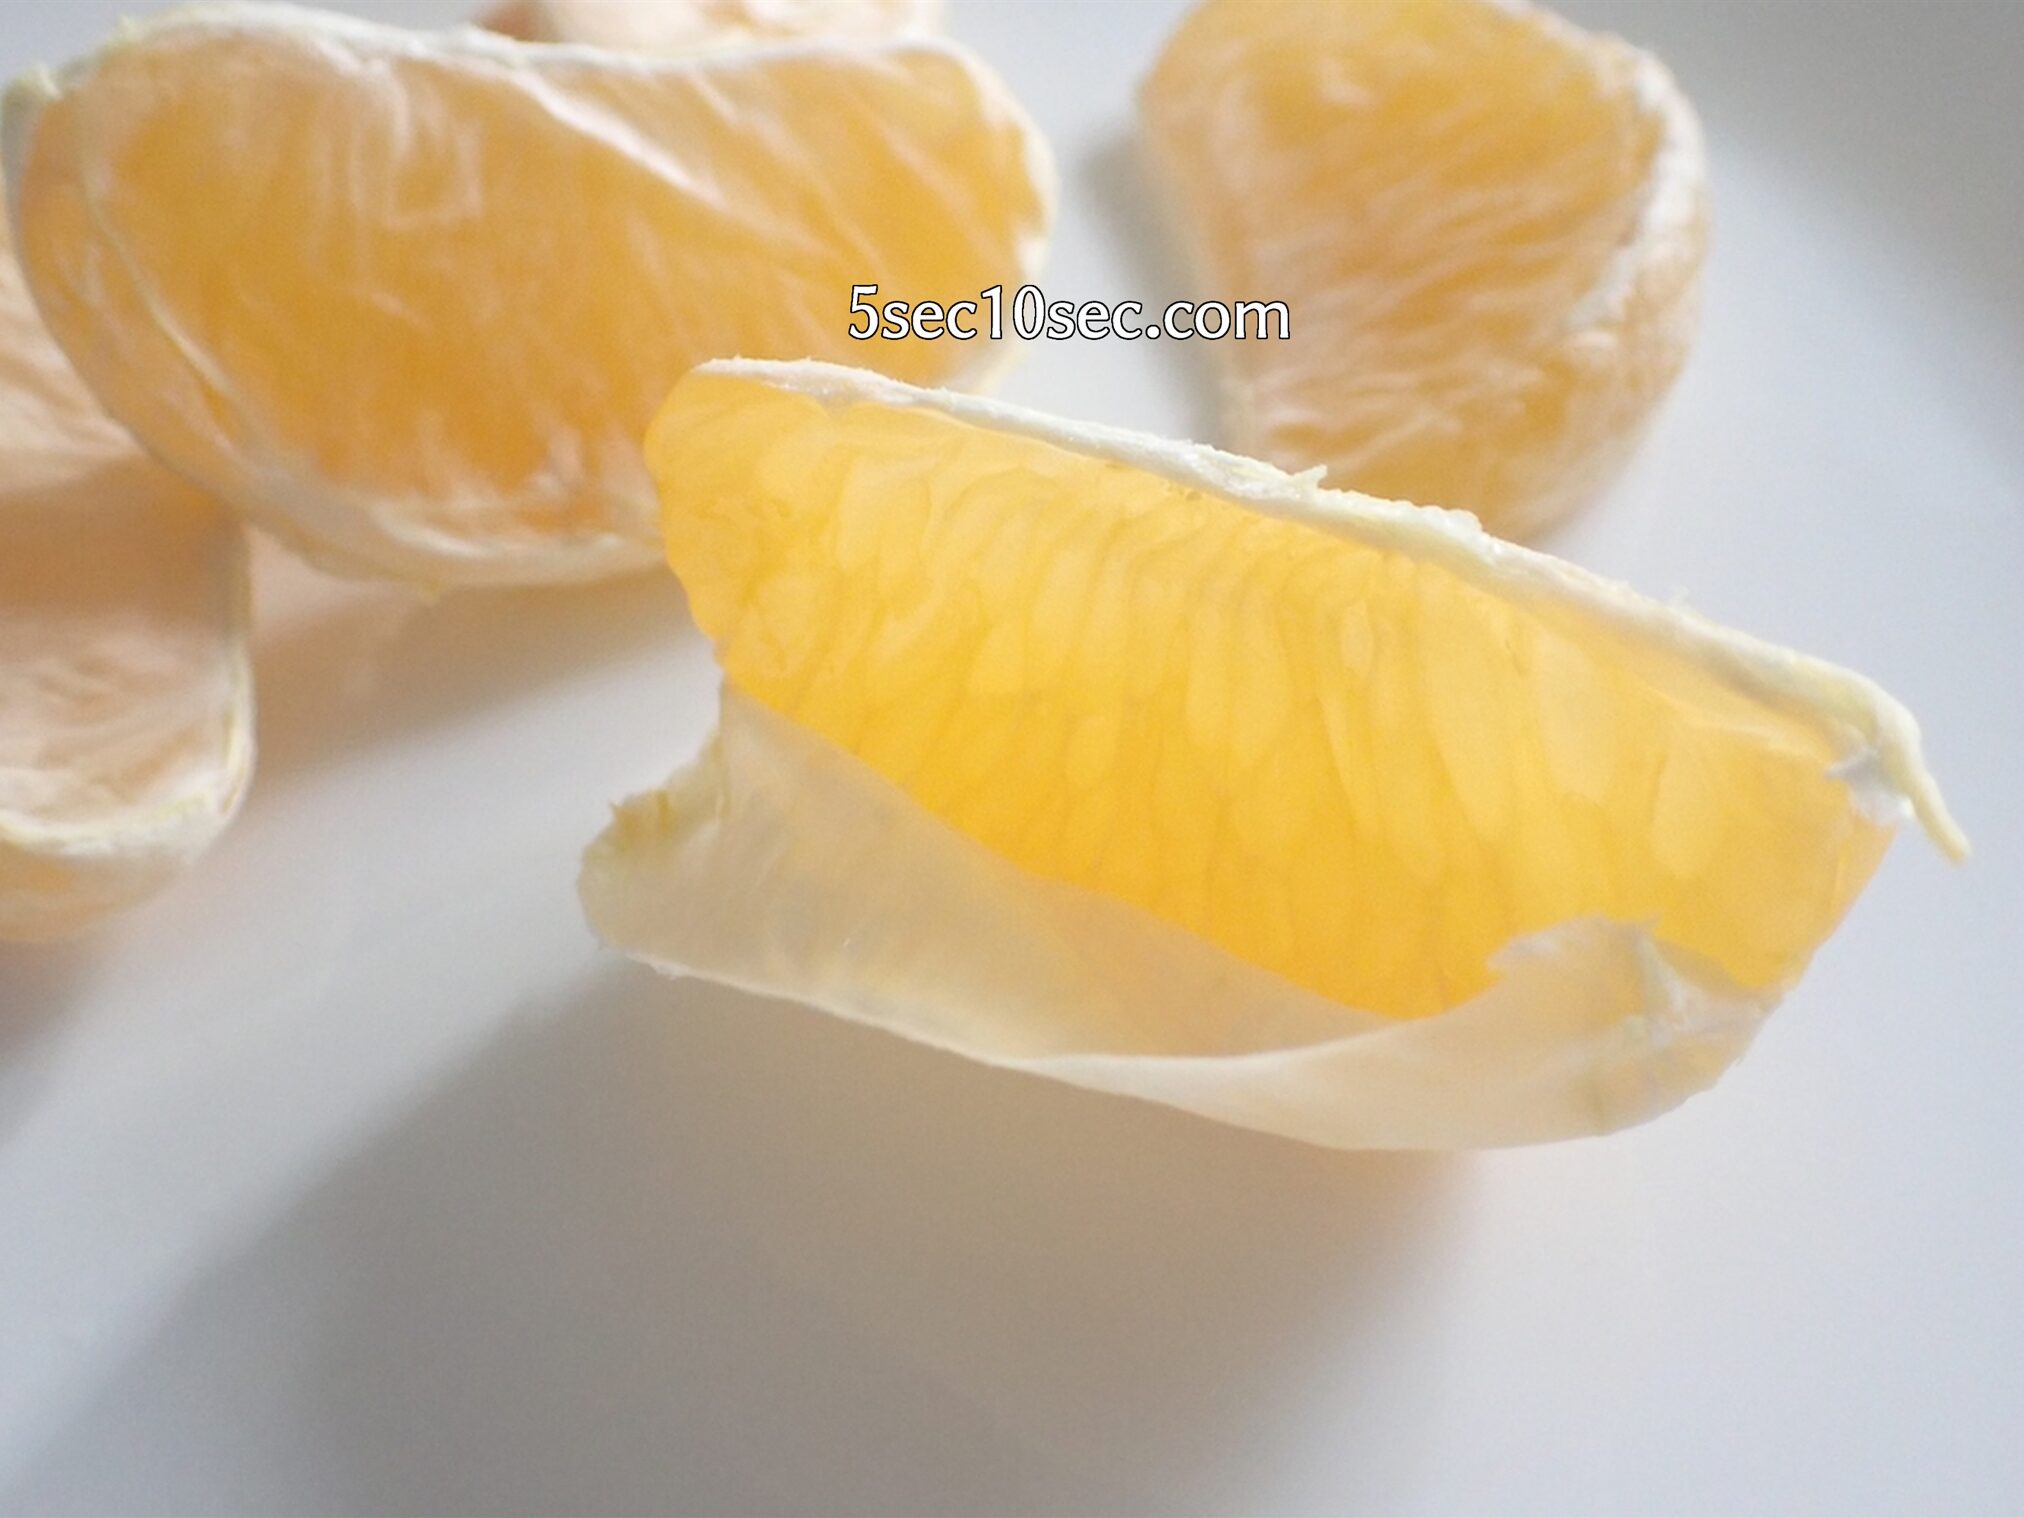 皮の厚い柑橘系は、一房ずつ、じょうのうの上部に切れ込みをいれて皮をむくと食べやすい